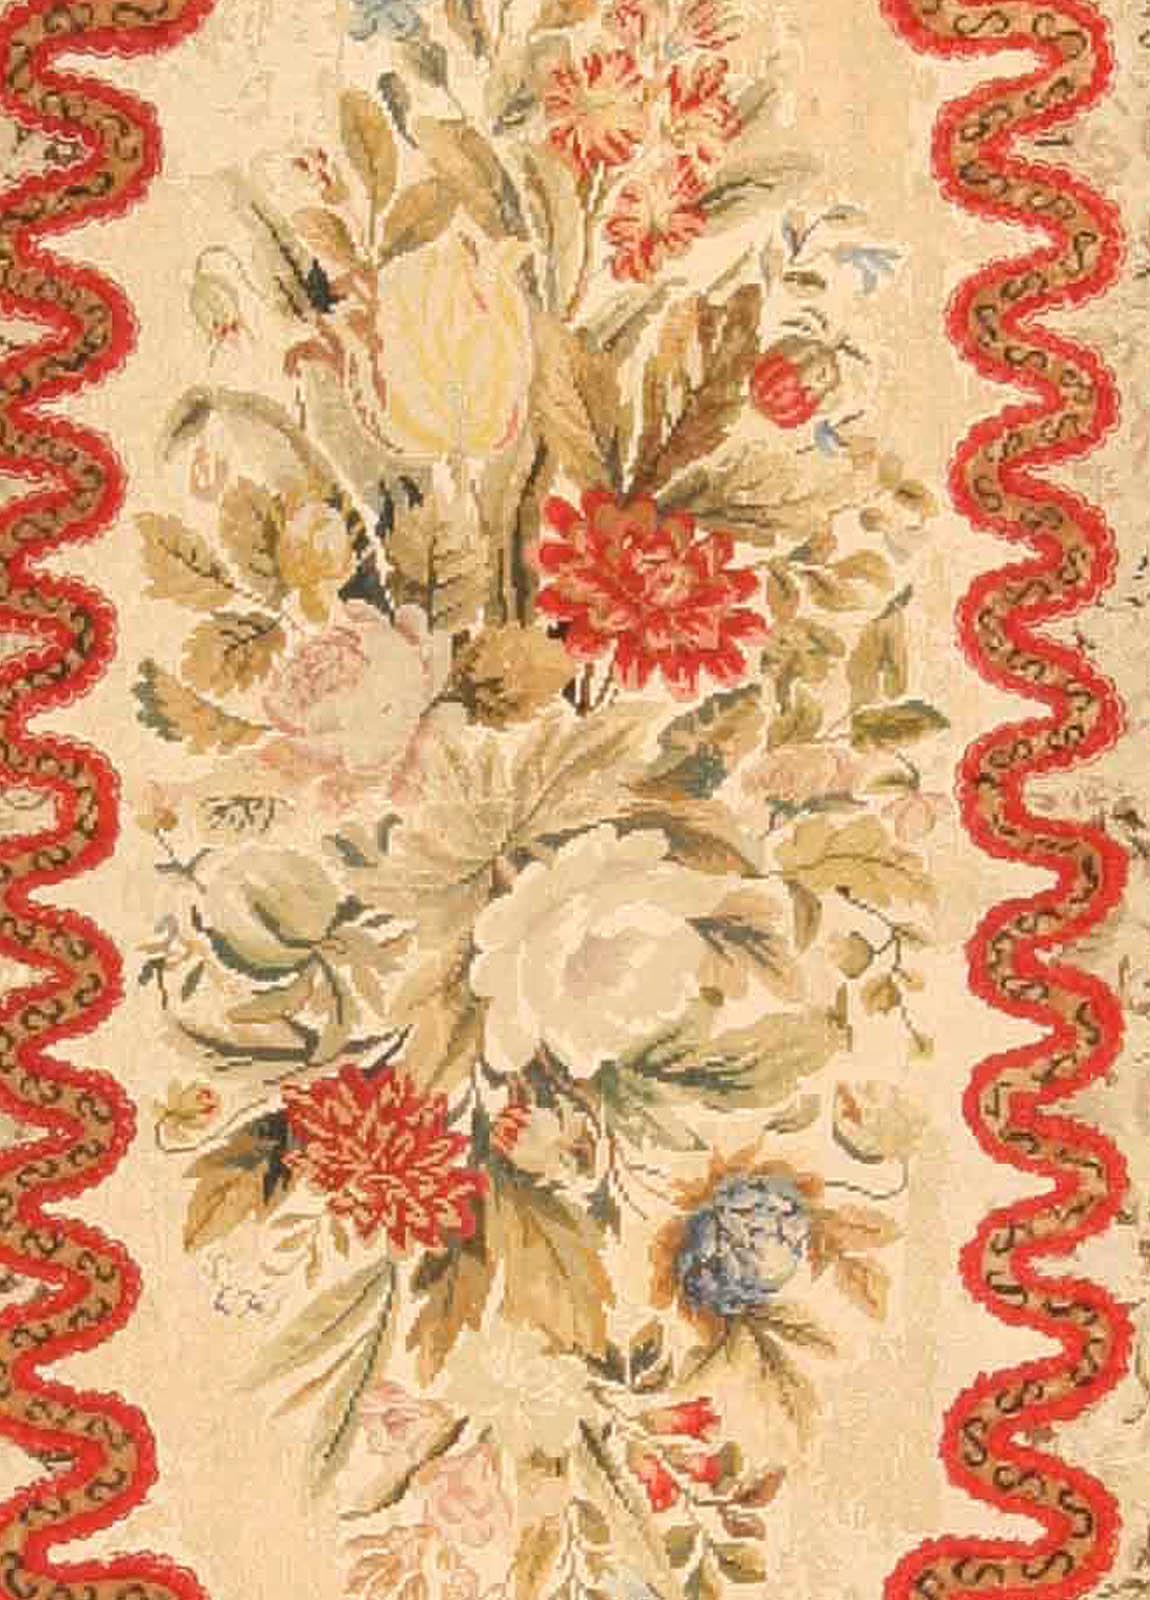 Antique botanic needlepoint carpet
Size: 10'0